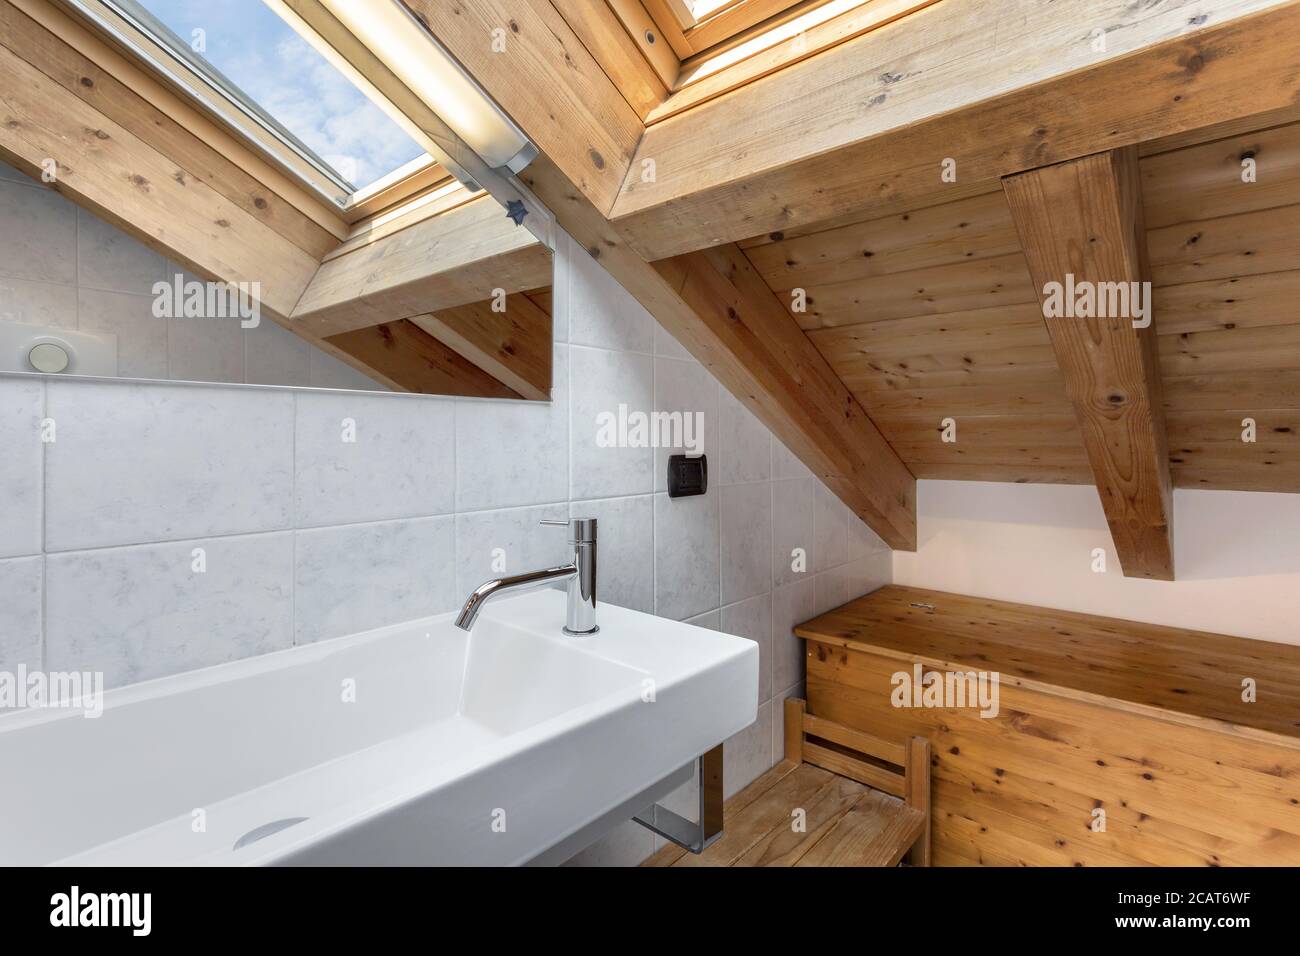 Praktisches und gemütliches Badezimmer mit Holzmöbeln. Dach mit freiliegenden Holzbalken und Himmelfenster. Italienischer Stil. Stockfoto